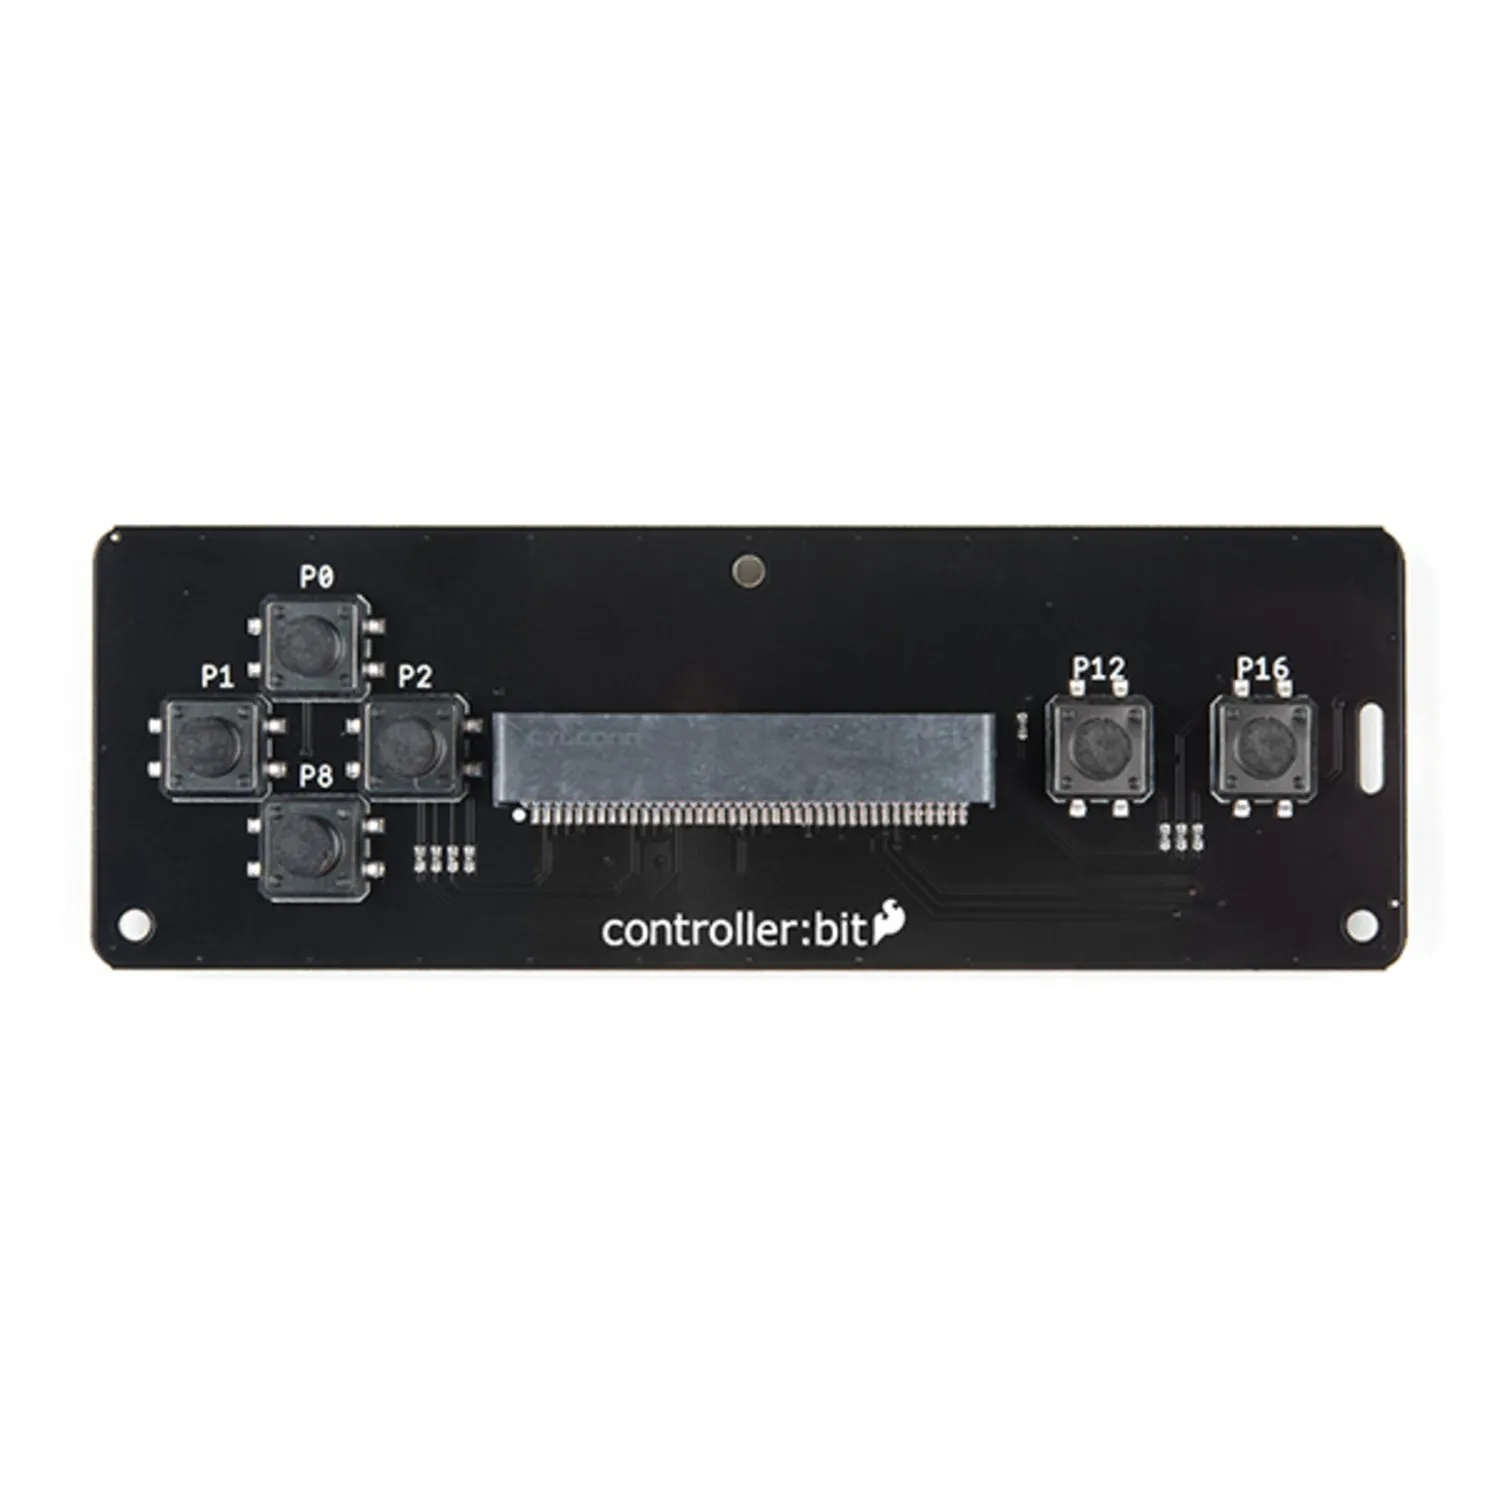 Photo of SparkFun controller:bit - micro:bit Carrier Board (Qwiic)